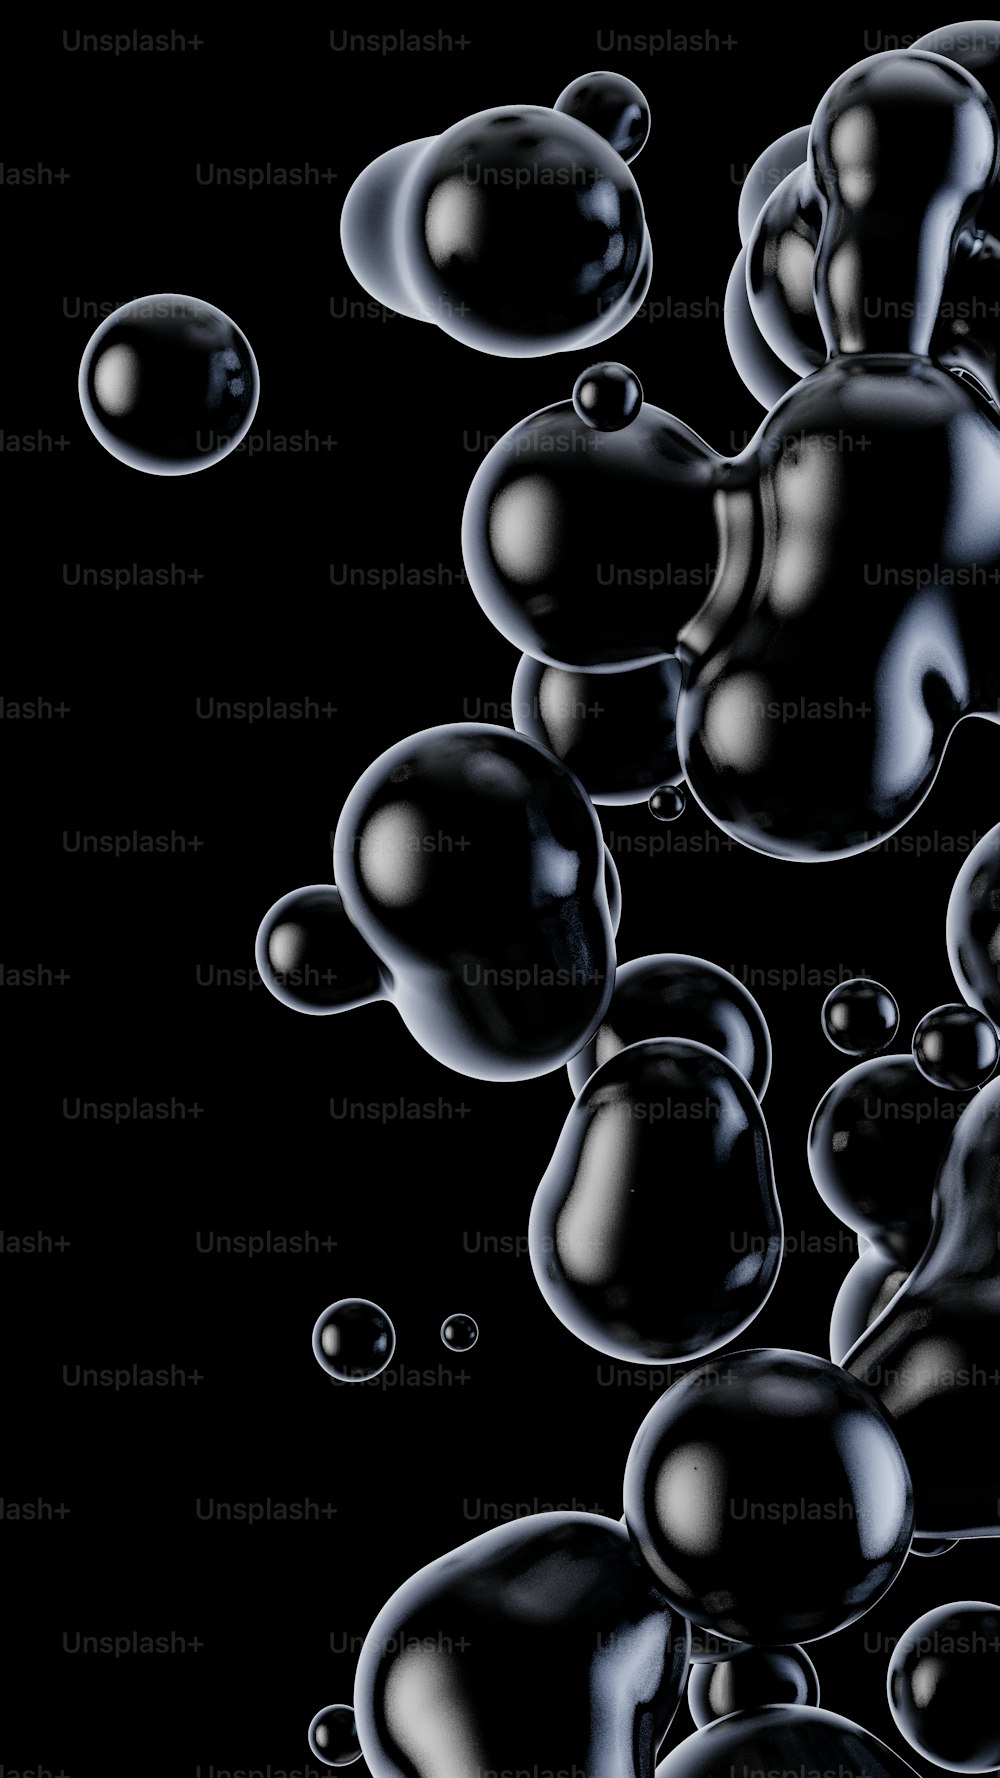 Un tas de bulles noires flottant dans l’air